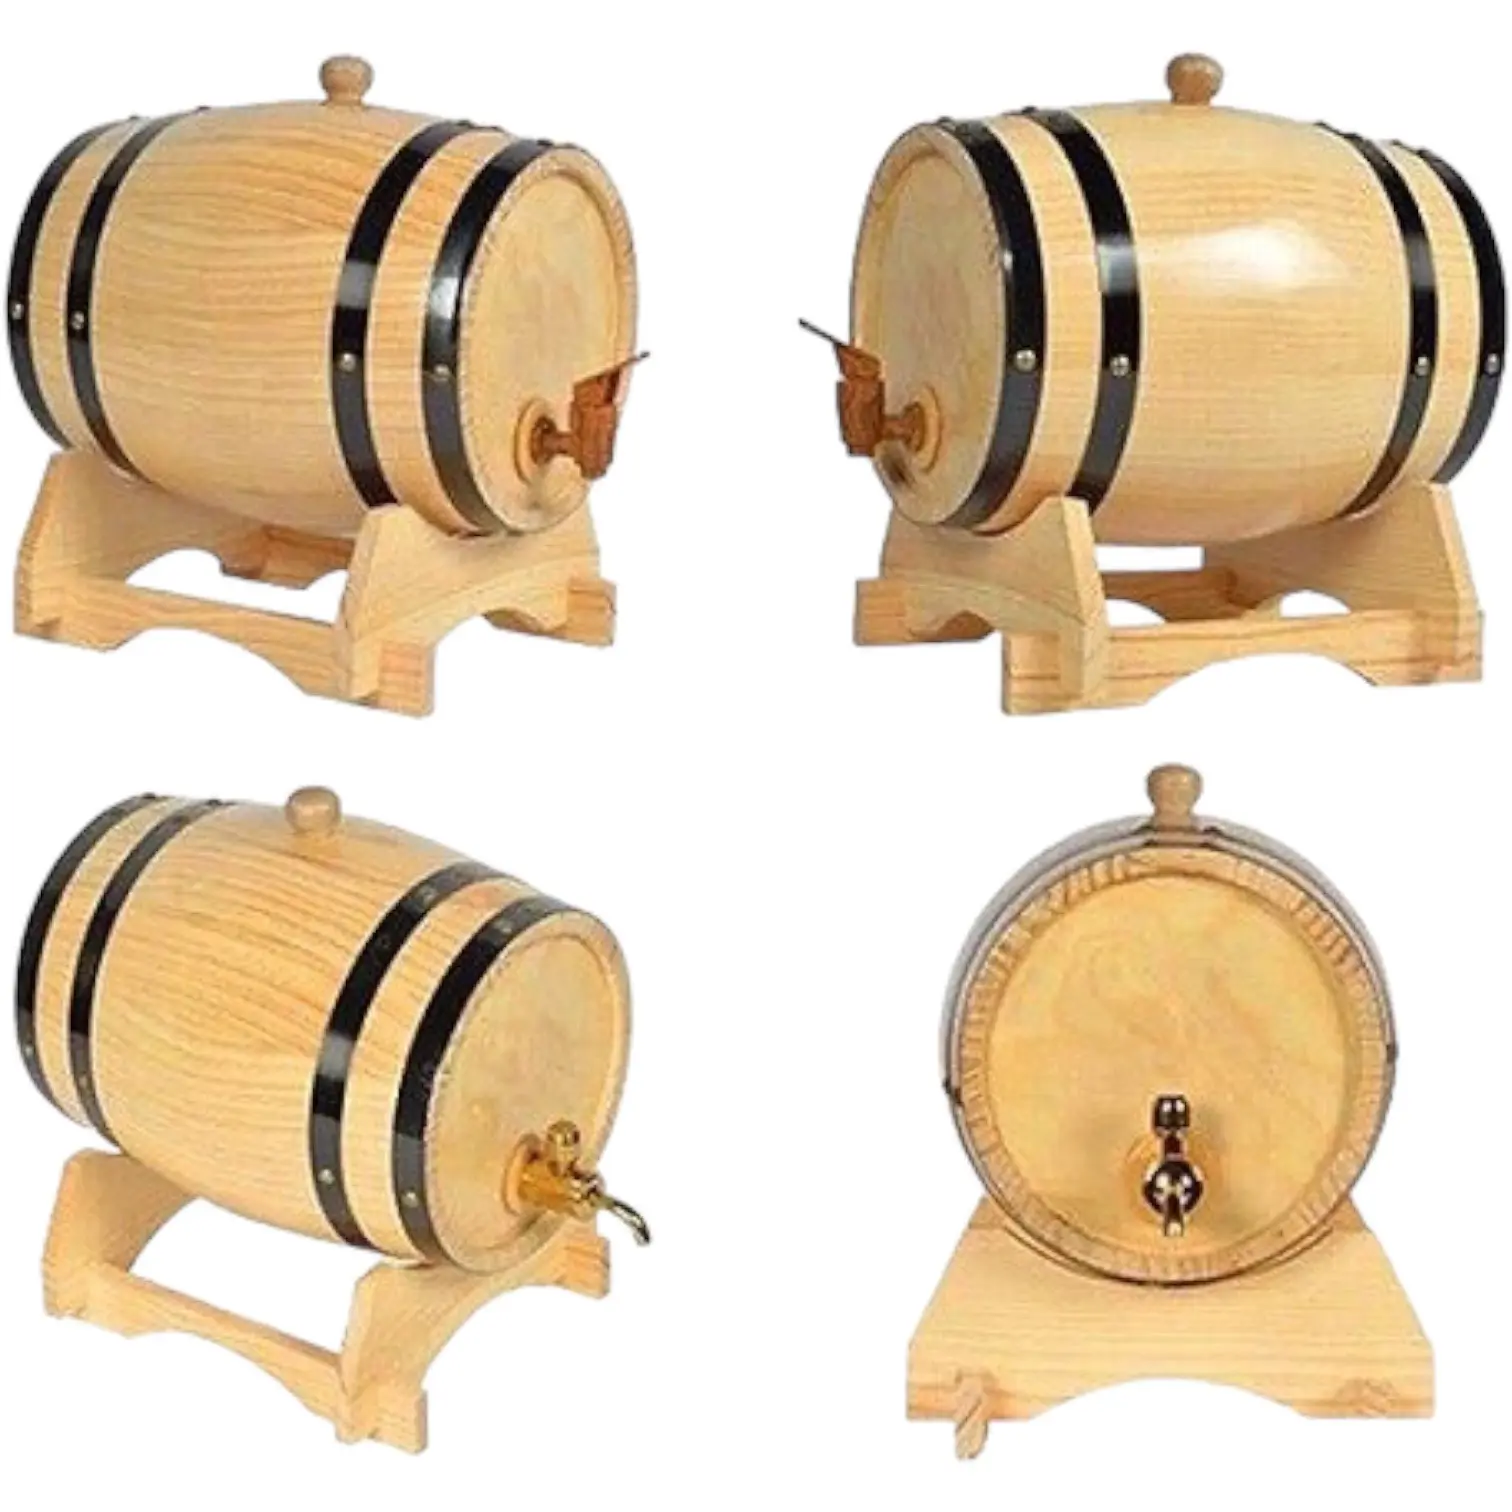 व्हिस्की रम बॉर्बन टकीला बीयर के लिए कस्टम सॉलिड पाइन लकड़ी का वाइन बैरल, वियतनाम फैक्ट्री OEM/ODM में निर्मित वाइन के लिए लकड़ी का बैरल